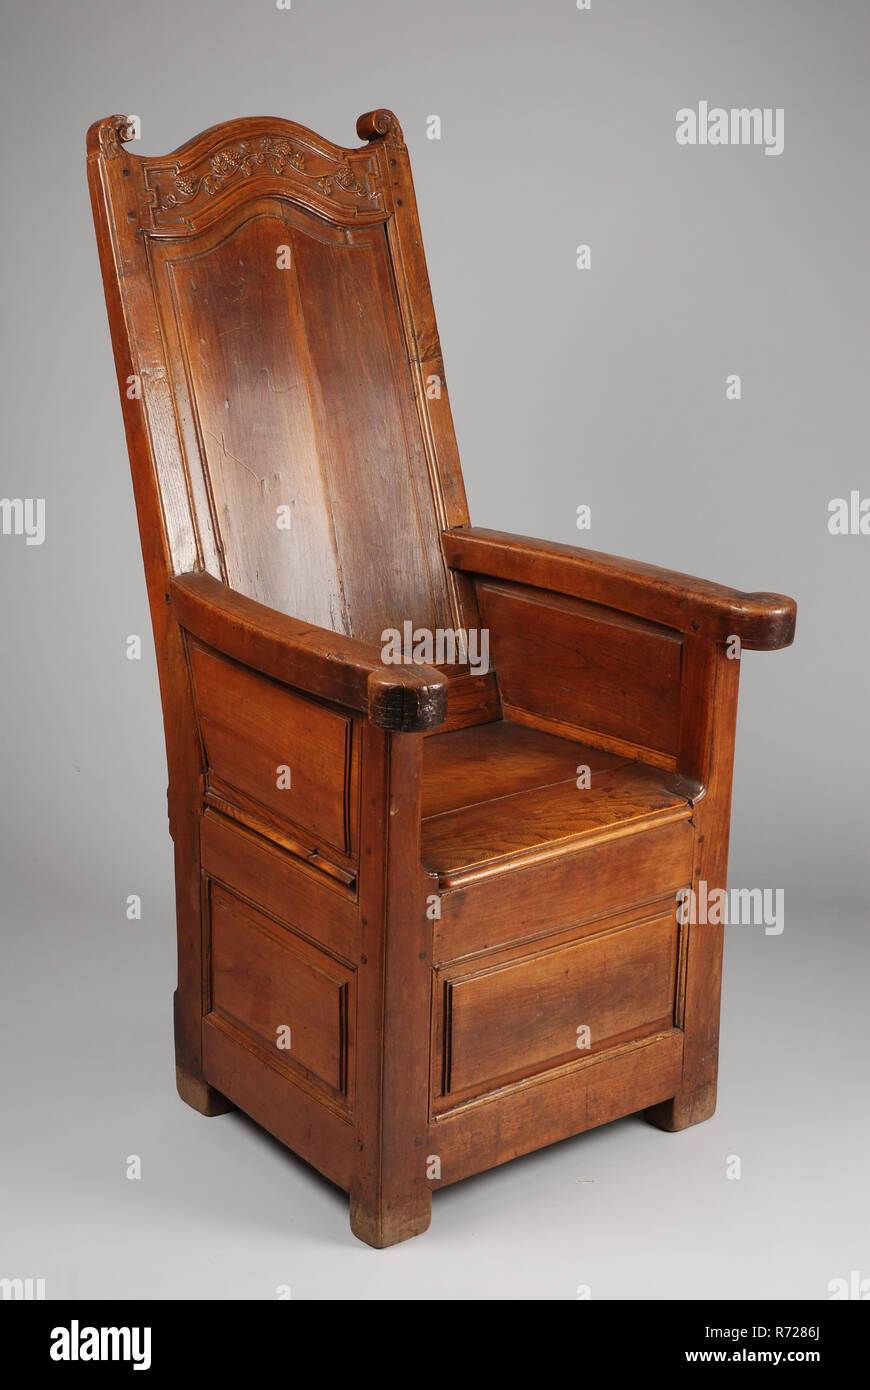 Ei - Holz Stuhl, Stuhl Möbel Innenmöbel elm Holz Eiche Kirsche Holz, Hohe  geschlossener Rückenlehne mit Carven auf der Haube zurück unter der  Rückseite ist geöffnet Stockfotografie - Alamy